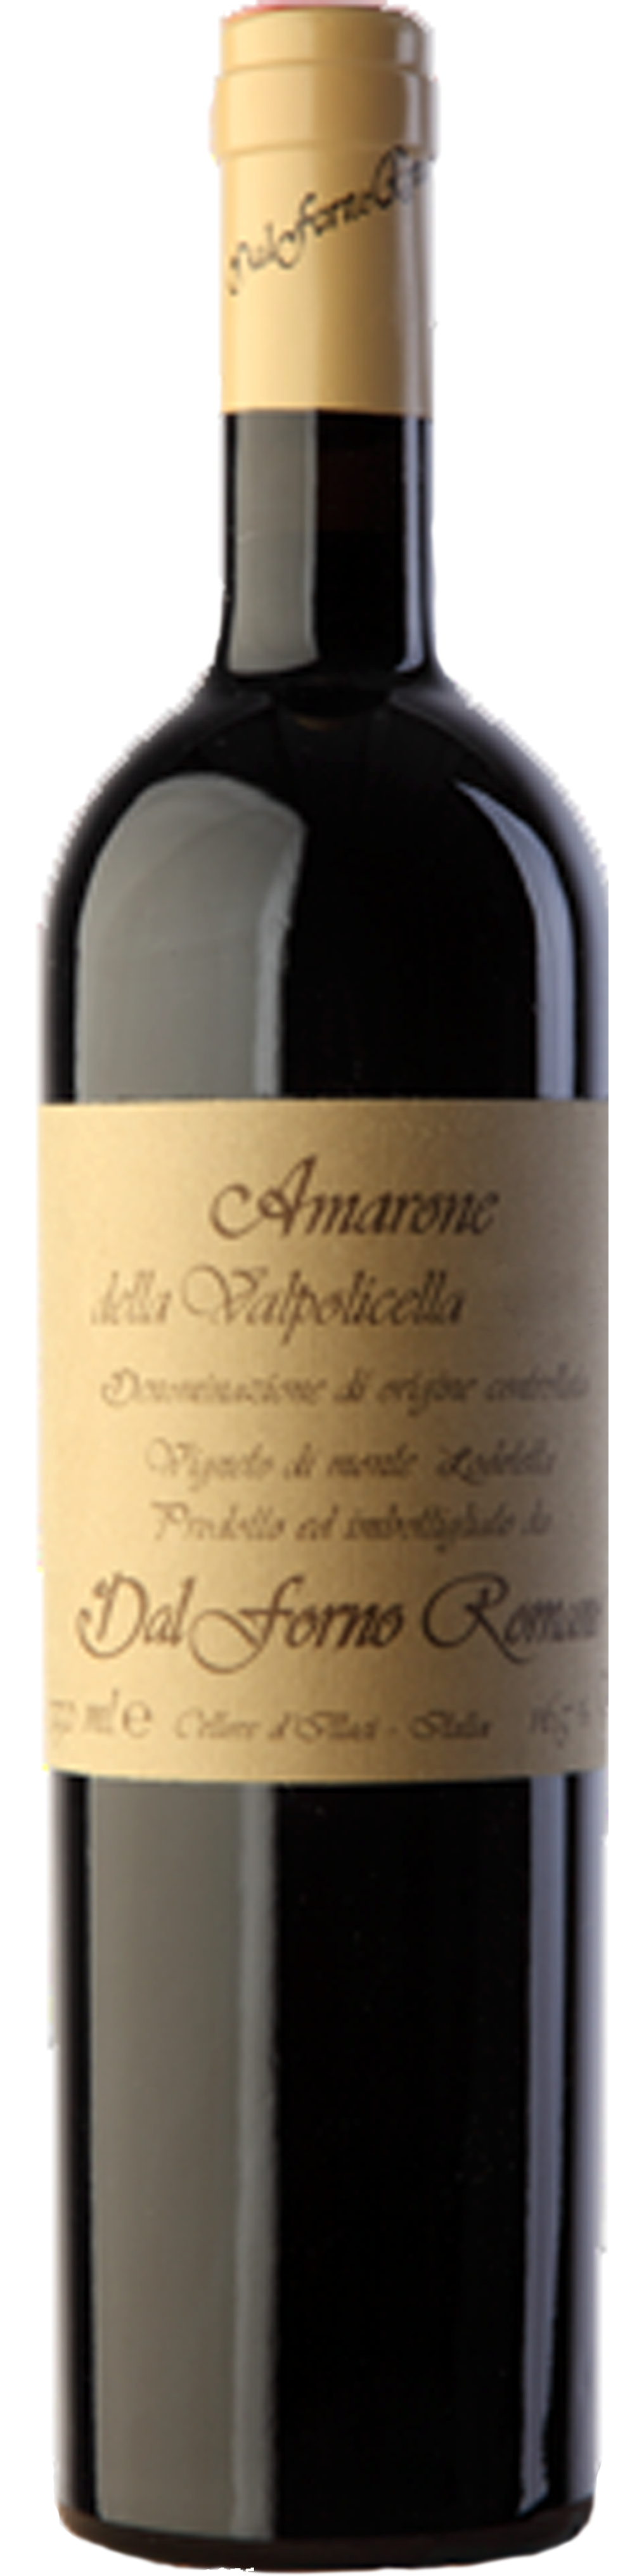 Bottle shot of 2010 Amarone Della Valpolicella